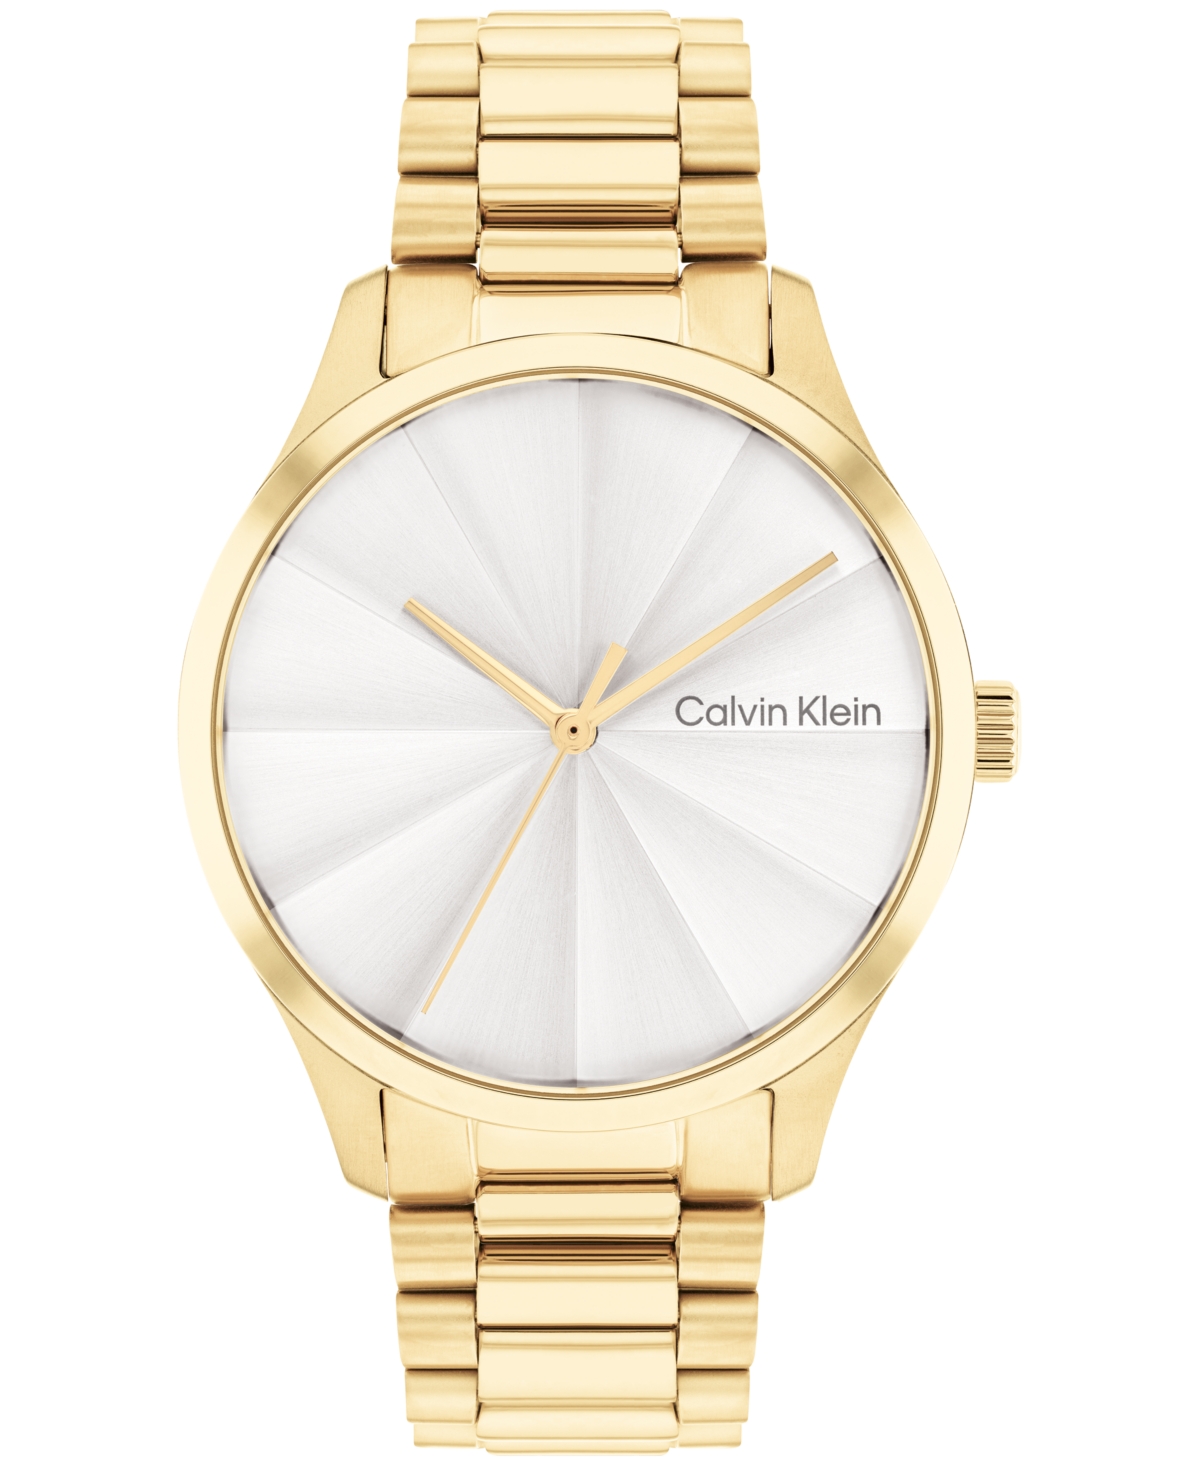 Calvin Klein Unisex 3-hand Gold-tone Stainless Steel Bracelet Watch 35mm